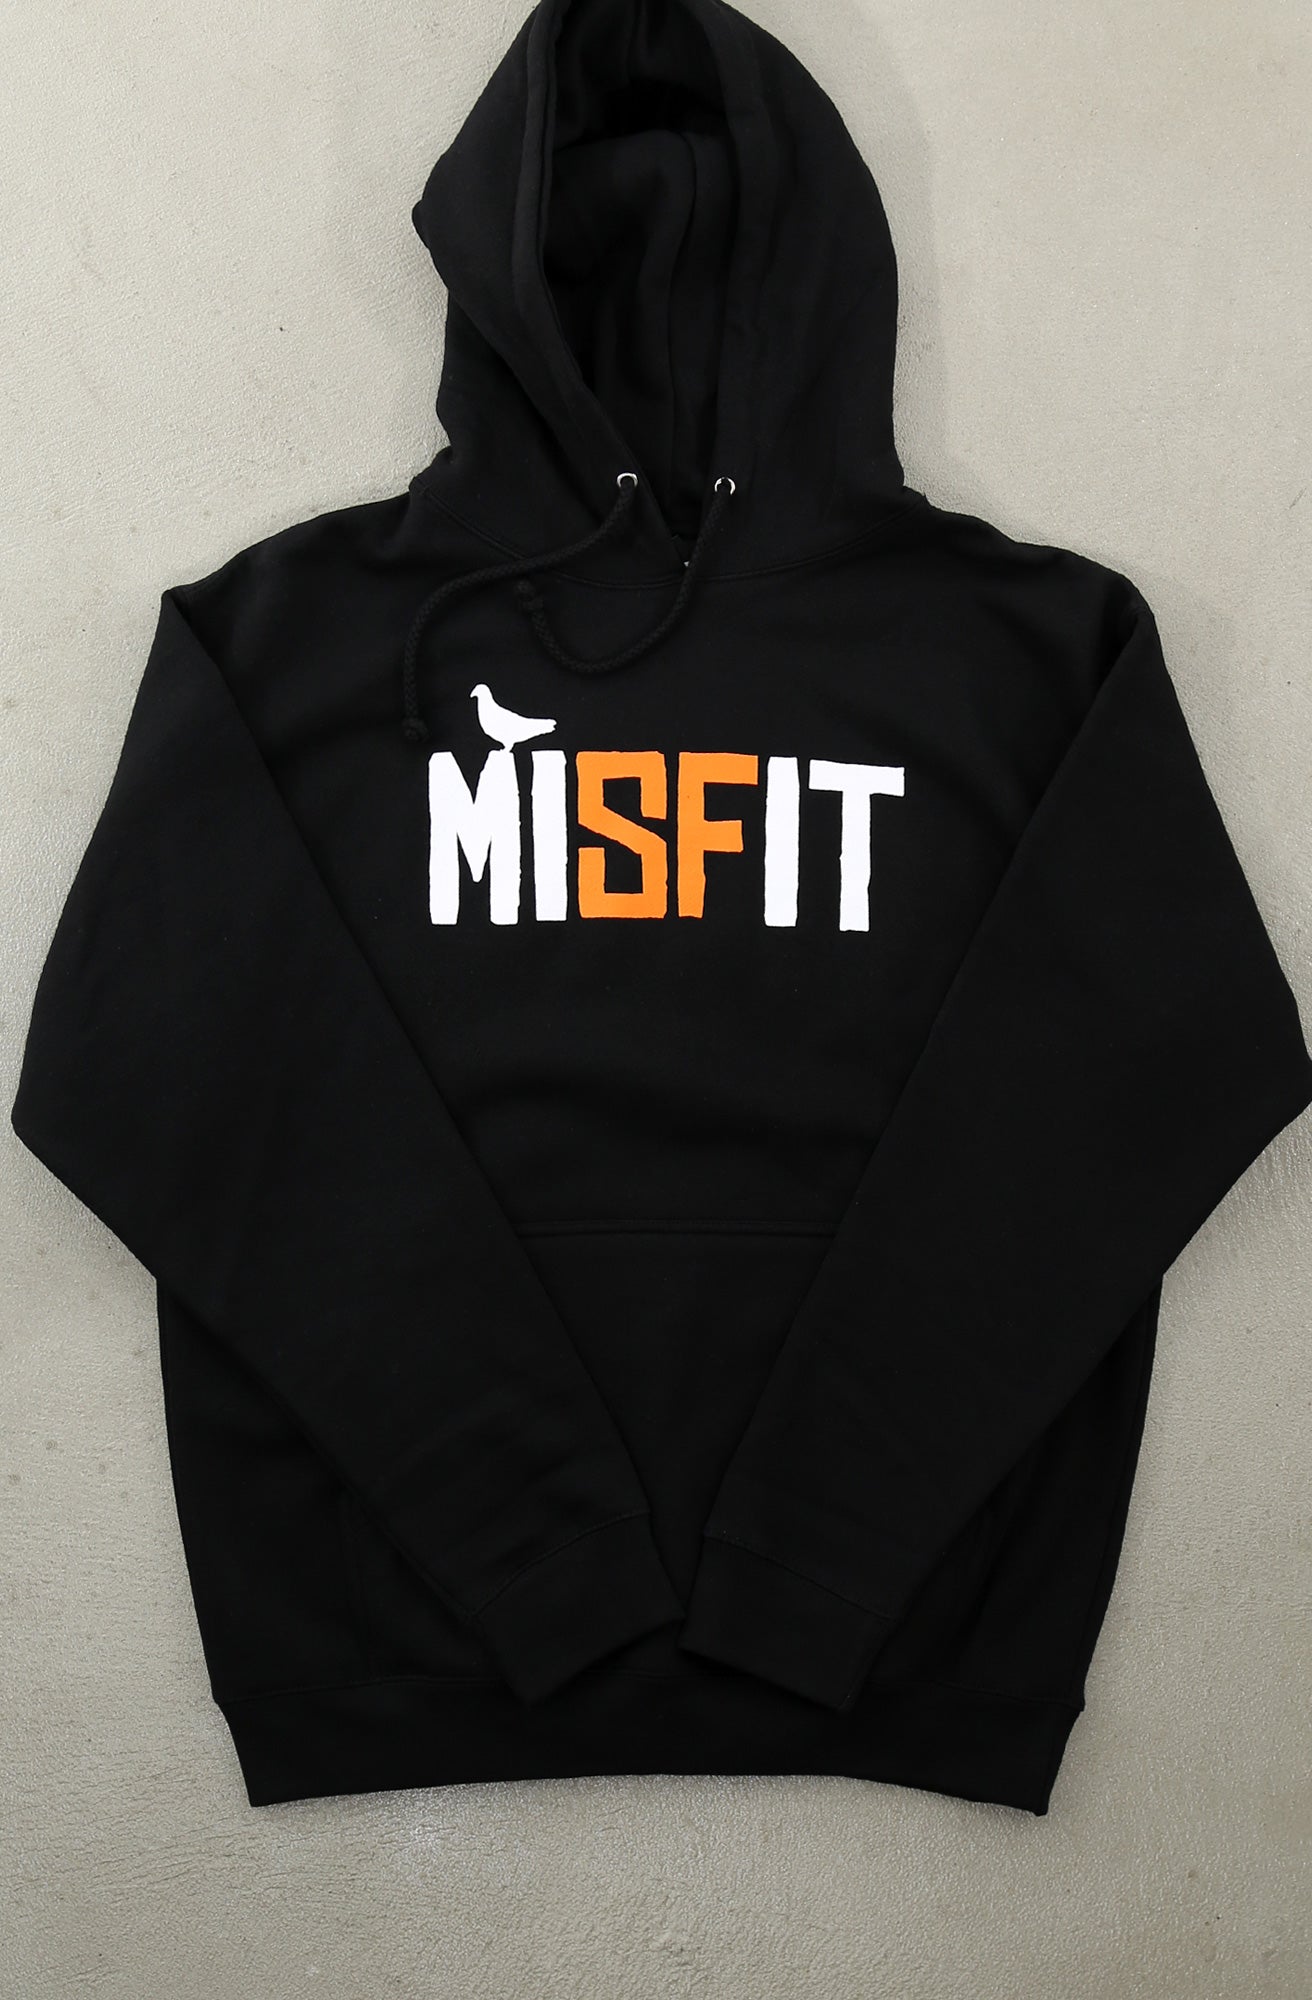 Misfit (Men's Black/Orange Hoody)